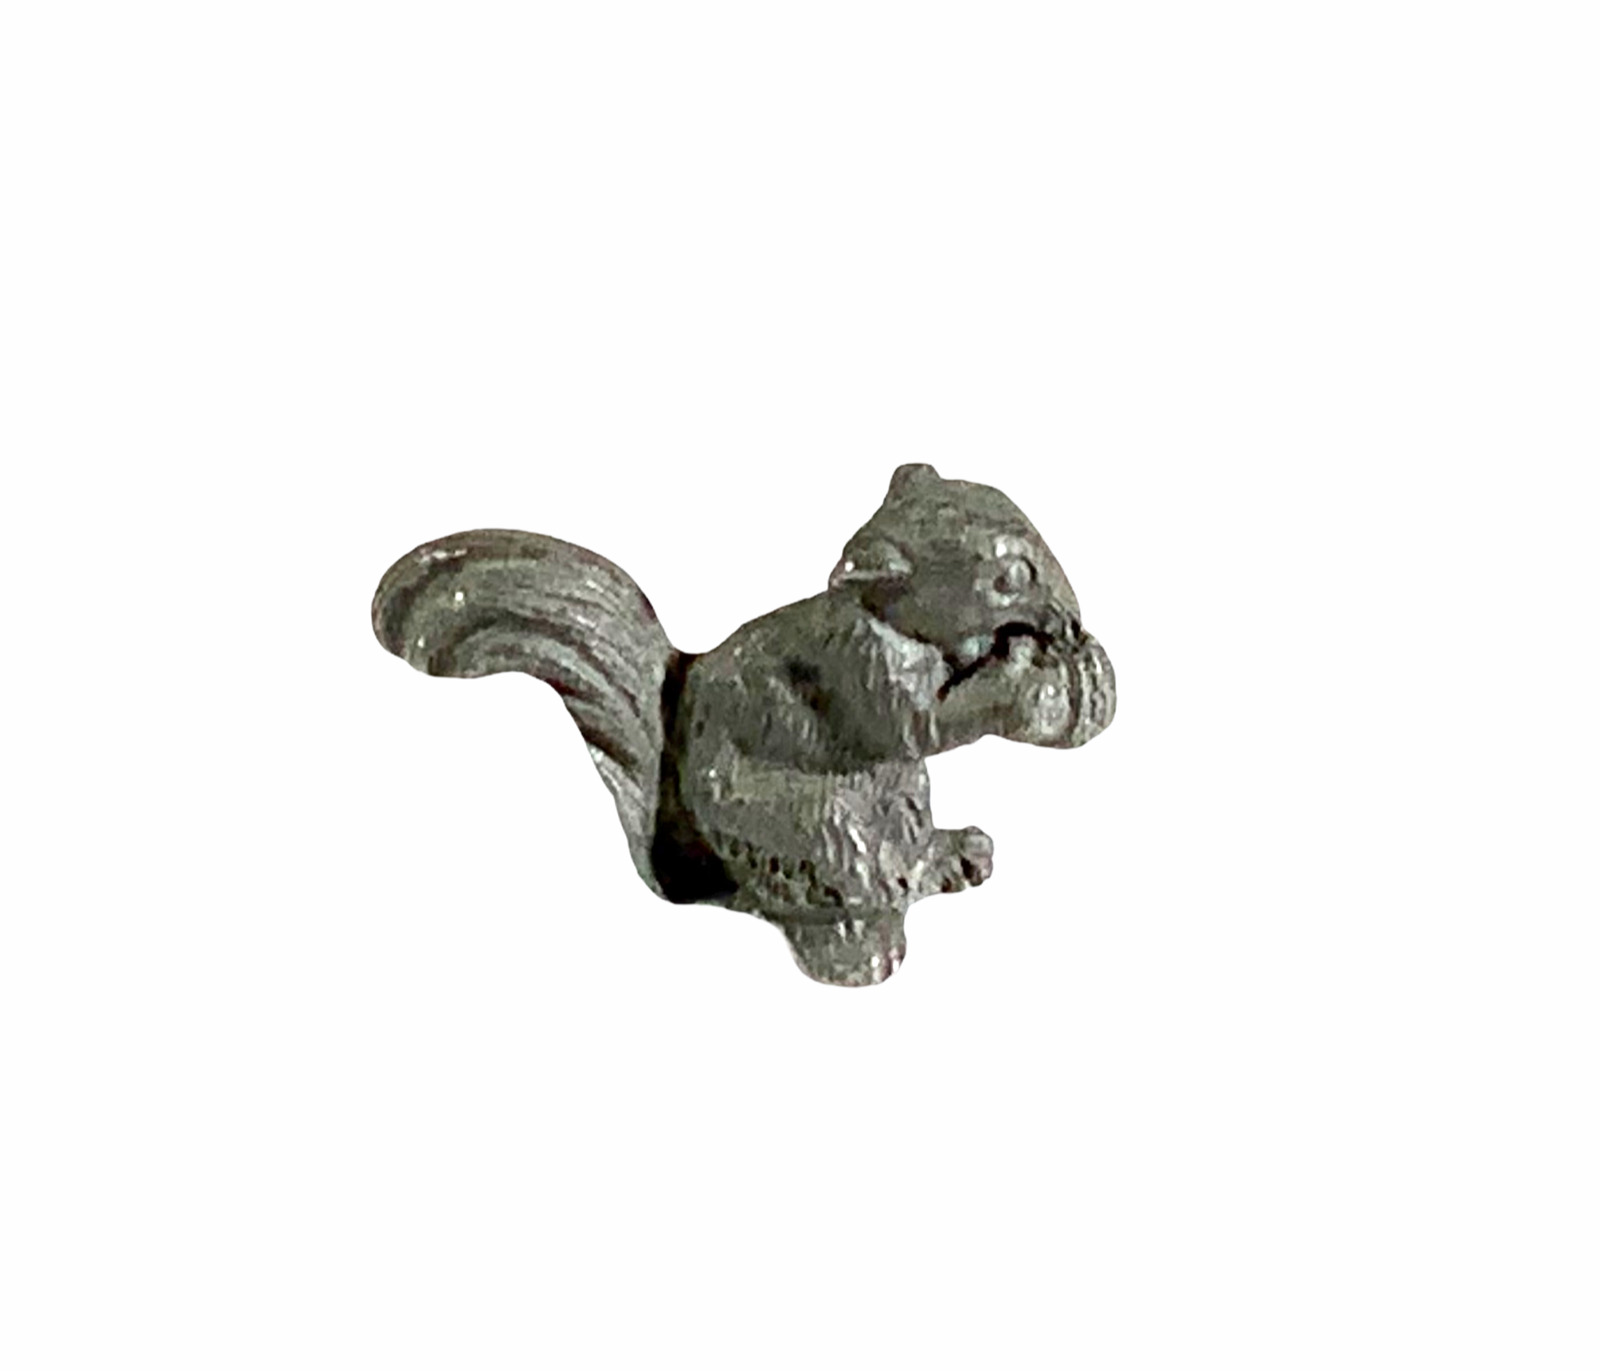 Miniature Pewter Squirrel Figurine